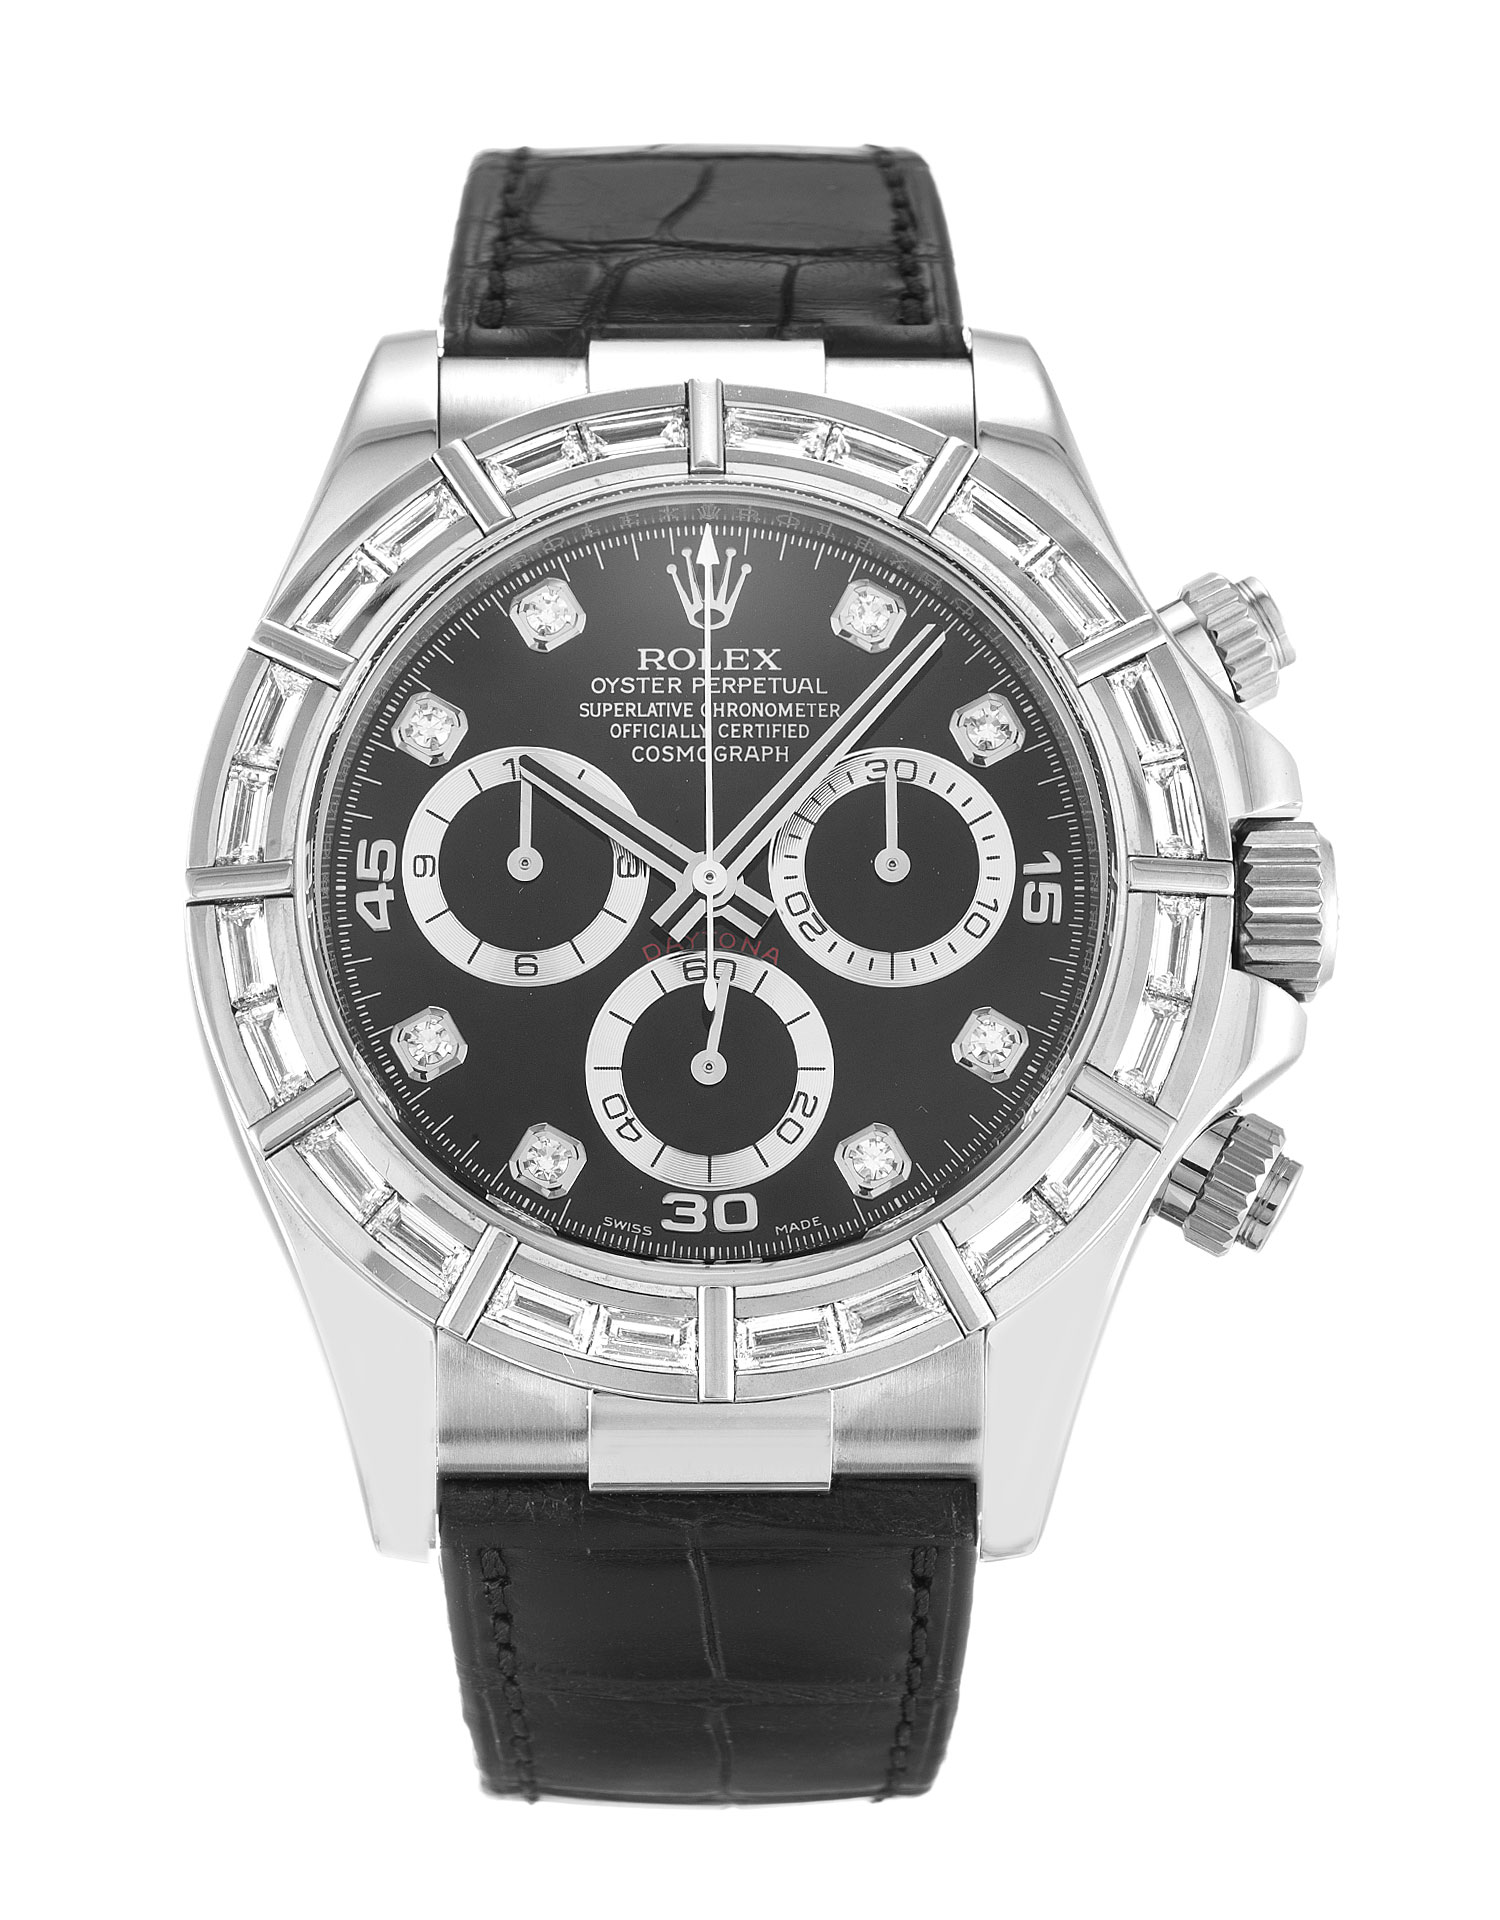 Imitation Rolex Watches: Rolex Daytona Replica, Fake Designer Watches